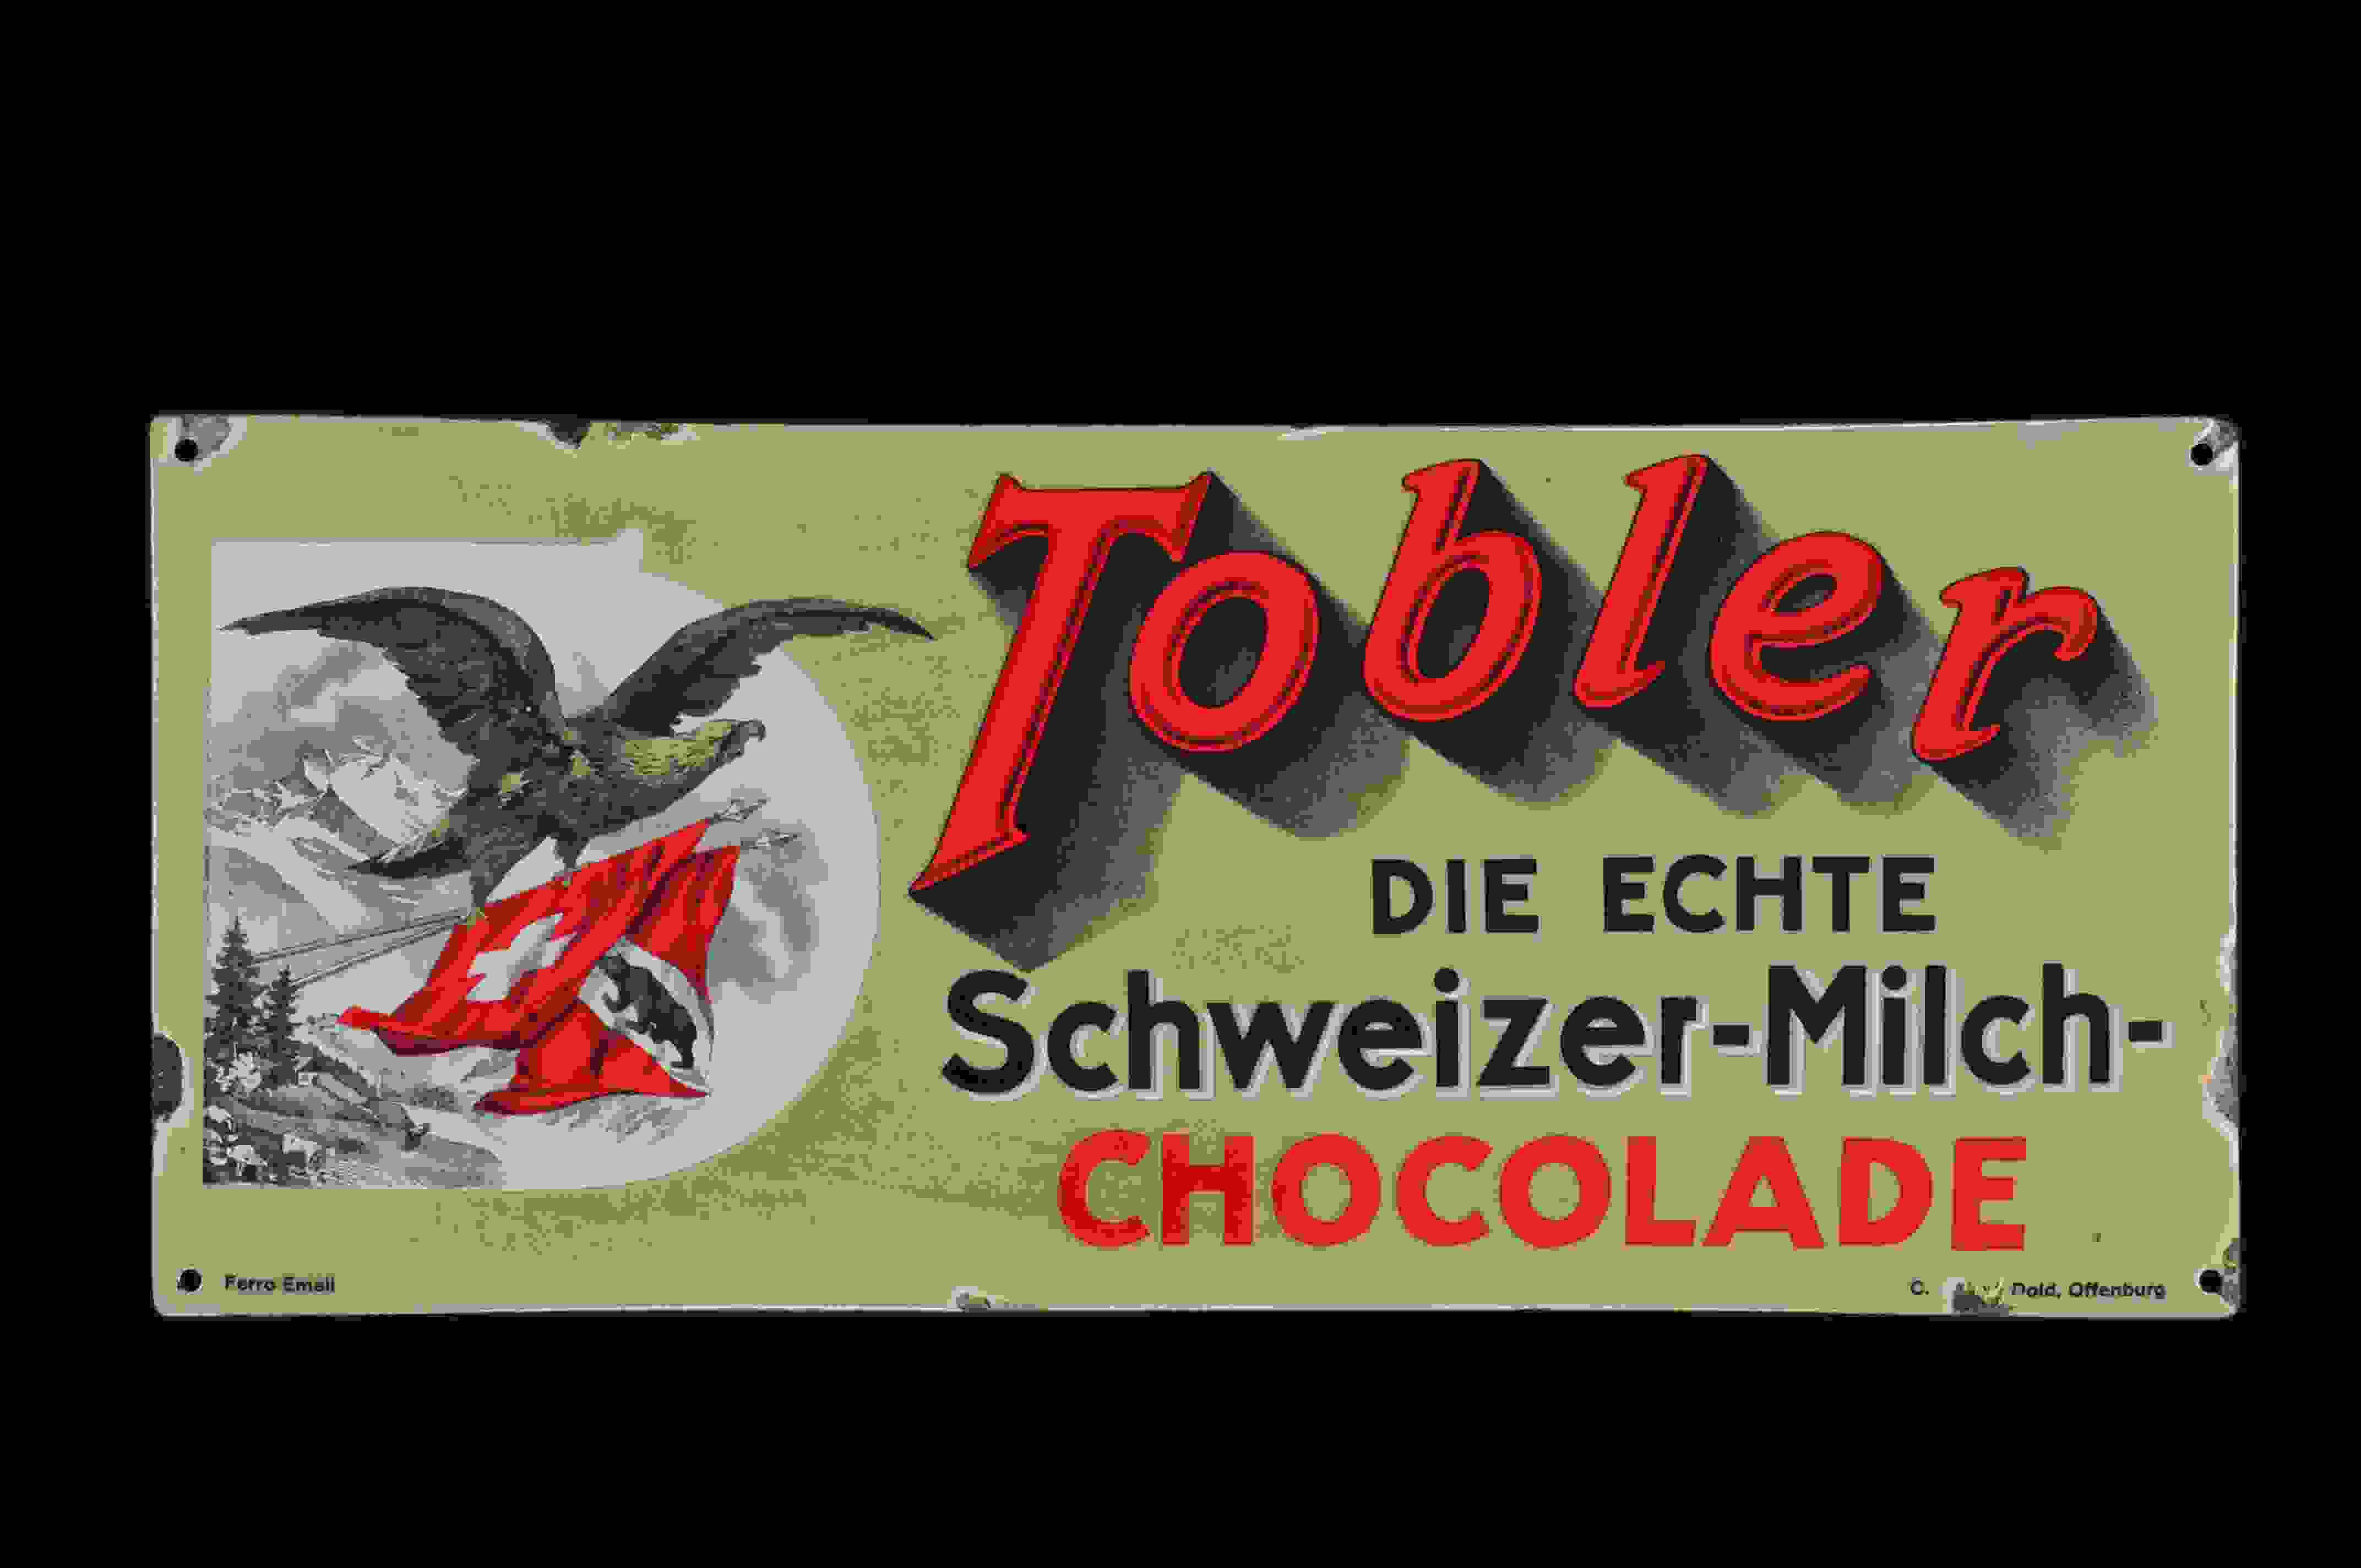 Tobler Schweizer-Milch-Chocolade 